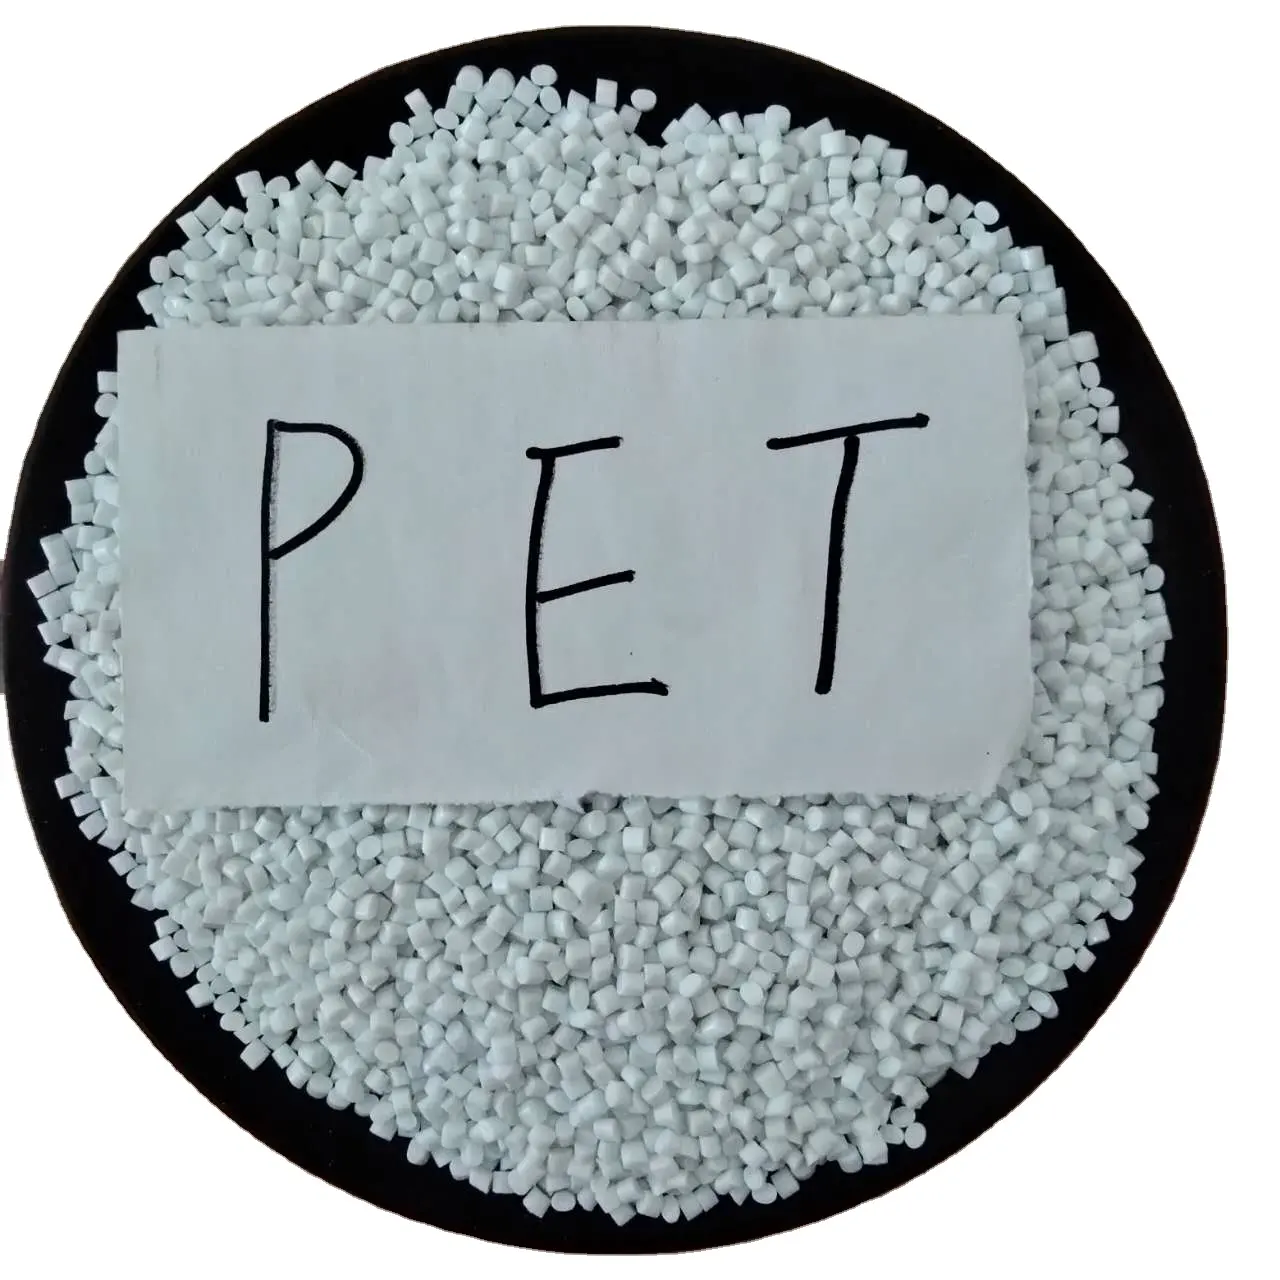 ペットペレットおよび原材料価格向けの認定リサイクル可能なPET医療および押出グレードの射出成形